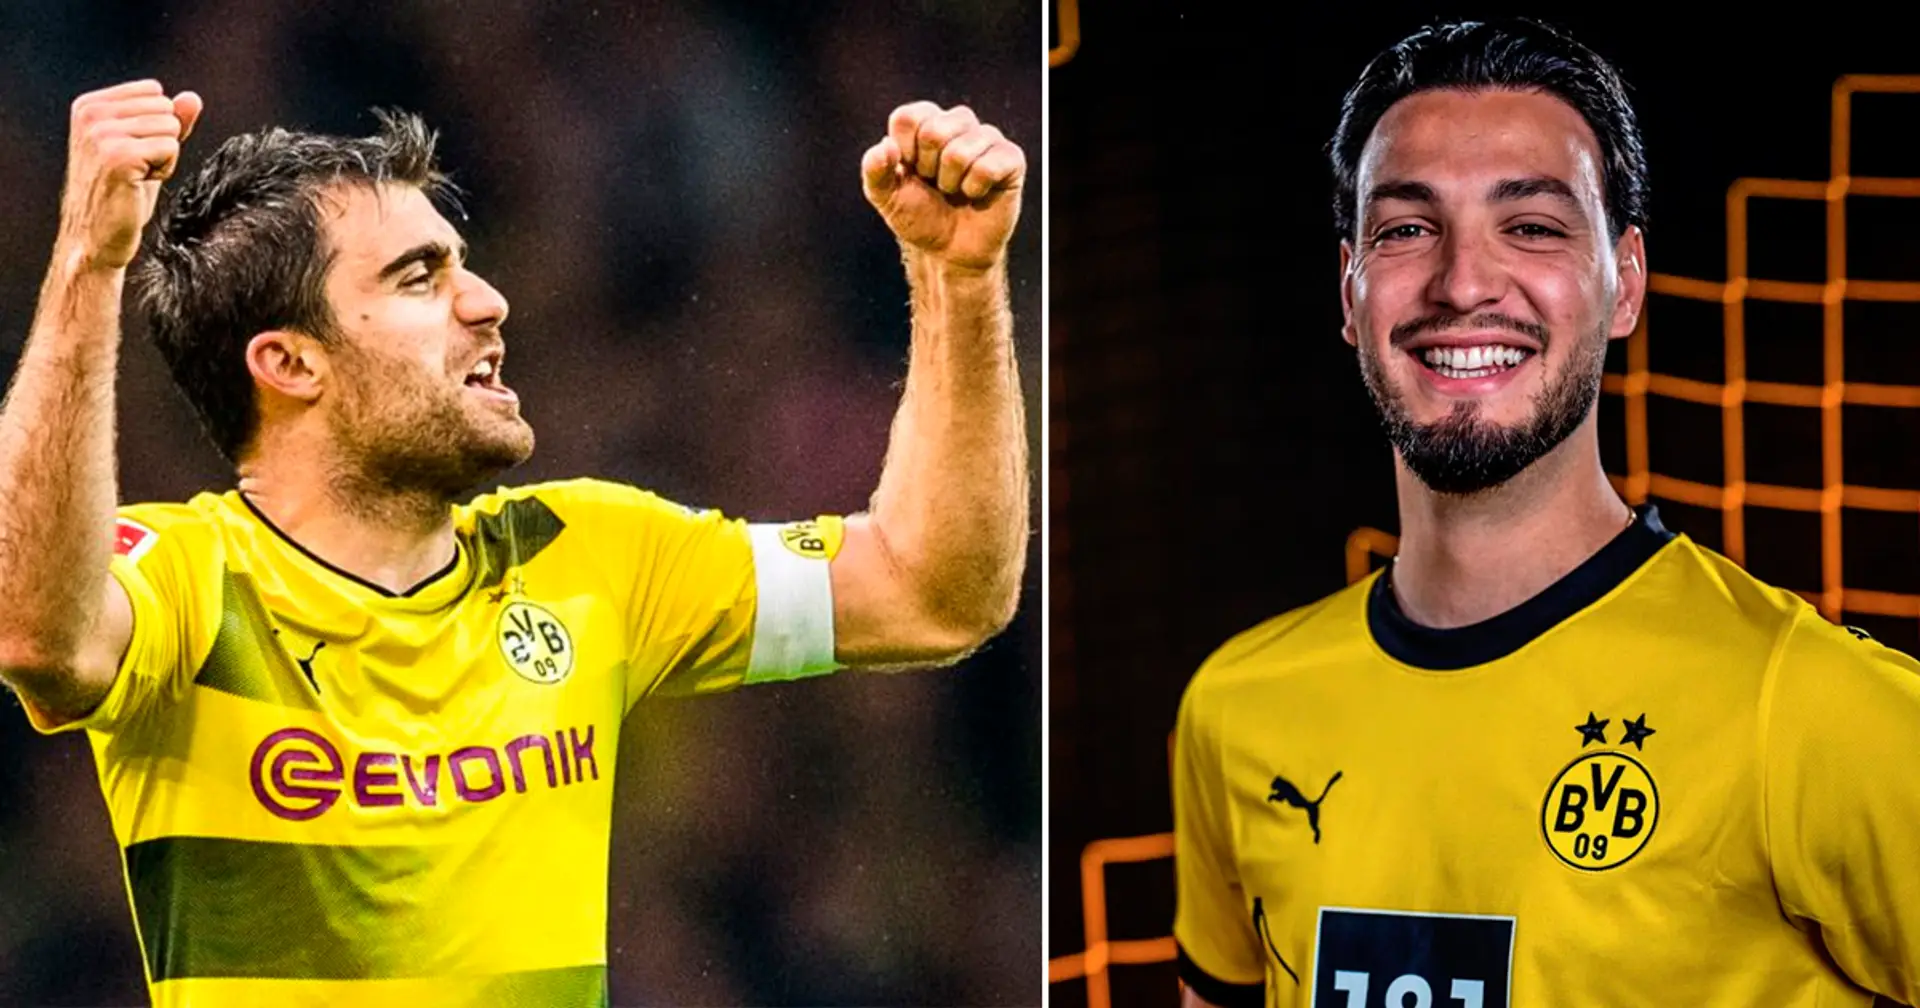 "Als Gegner verhasst, als eigener Spieler geliebt": BVB-Fan vergleicht Bensebaini mit Ex-Dortmunder Sokratis